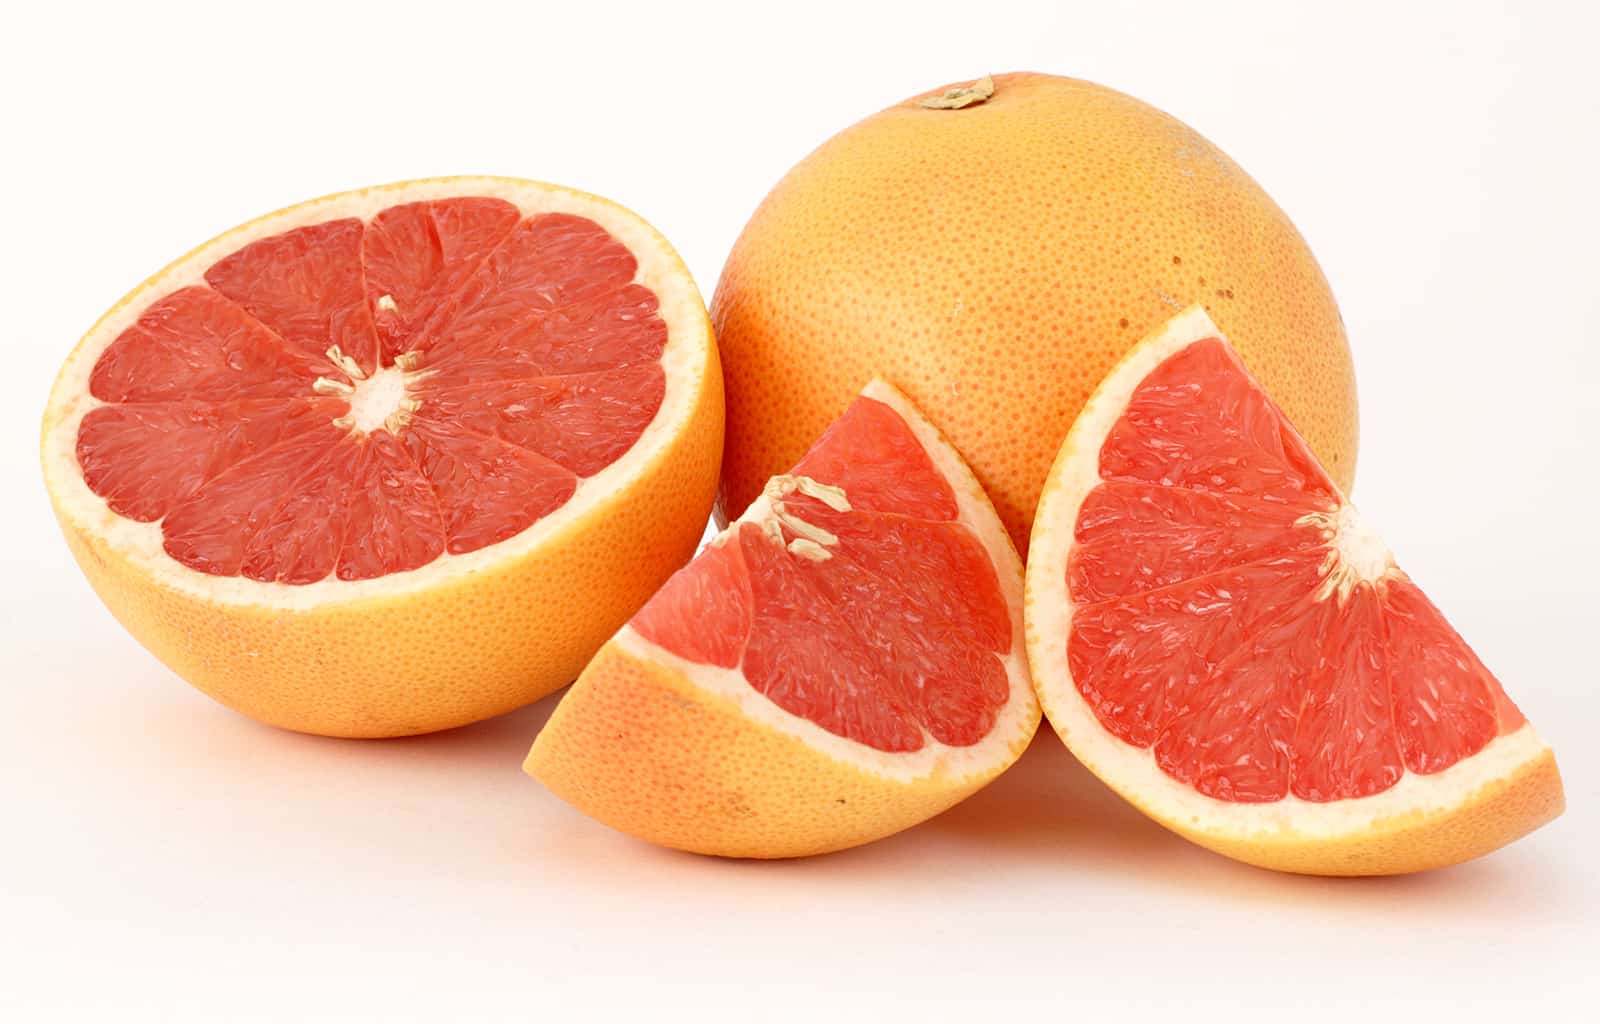 grapefruit nutrition facts calories